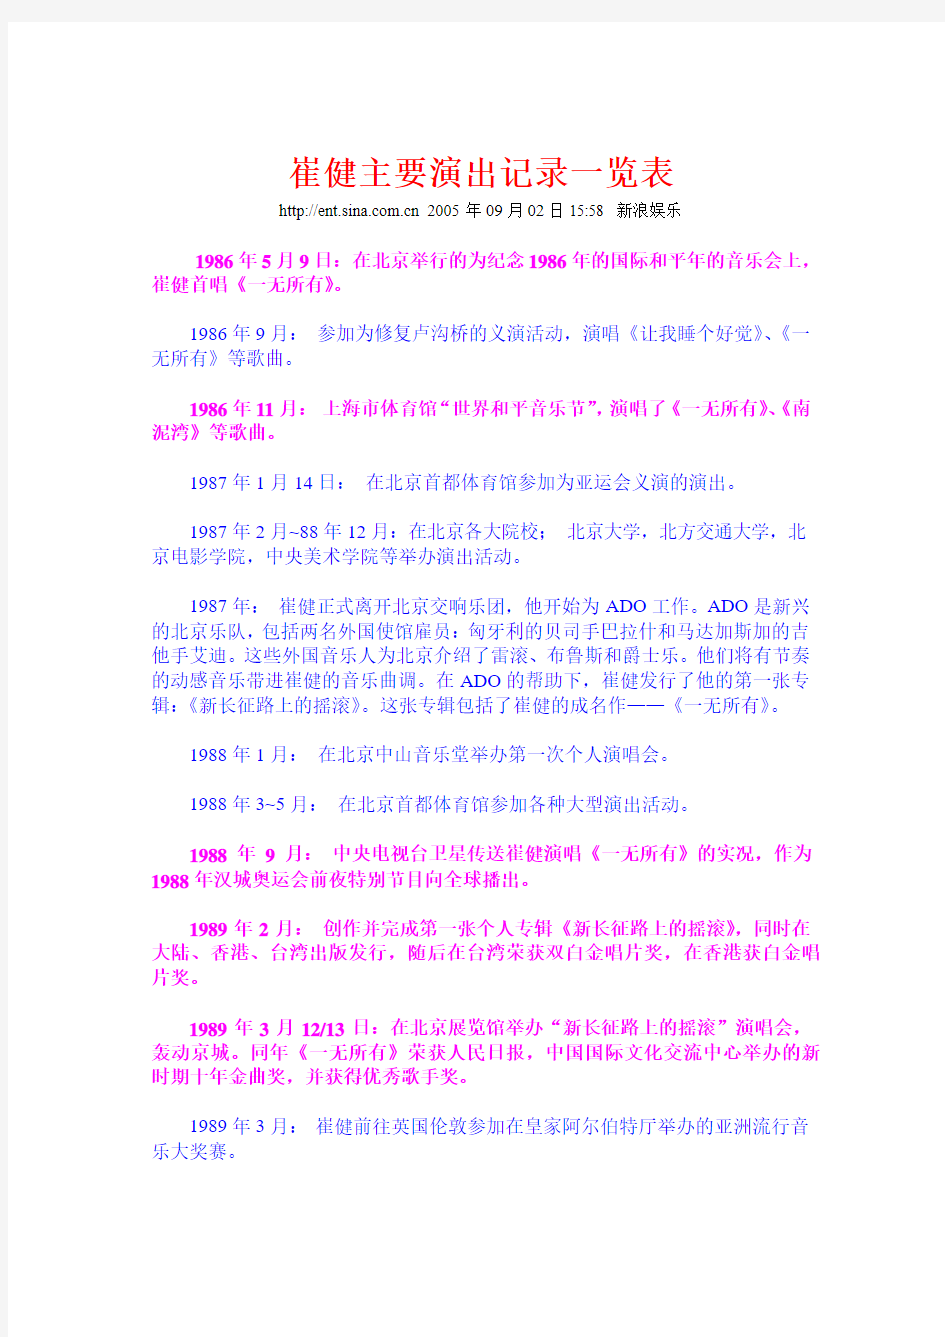 崔健主要演出记录一览表(1986-2005)